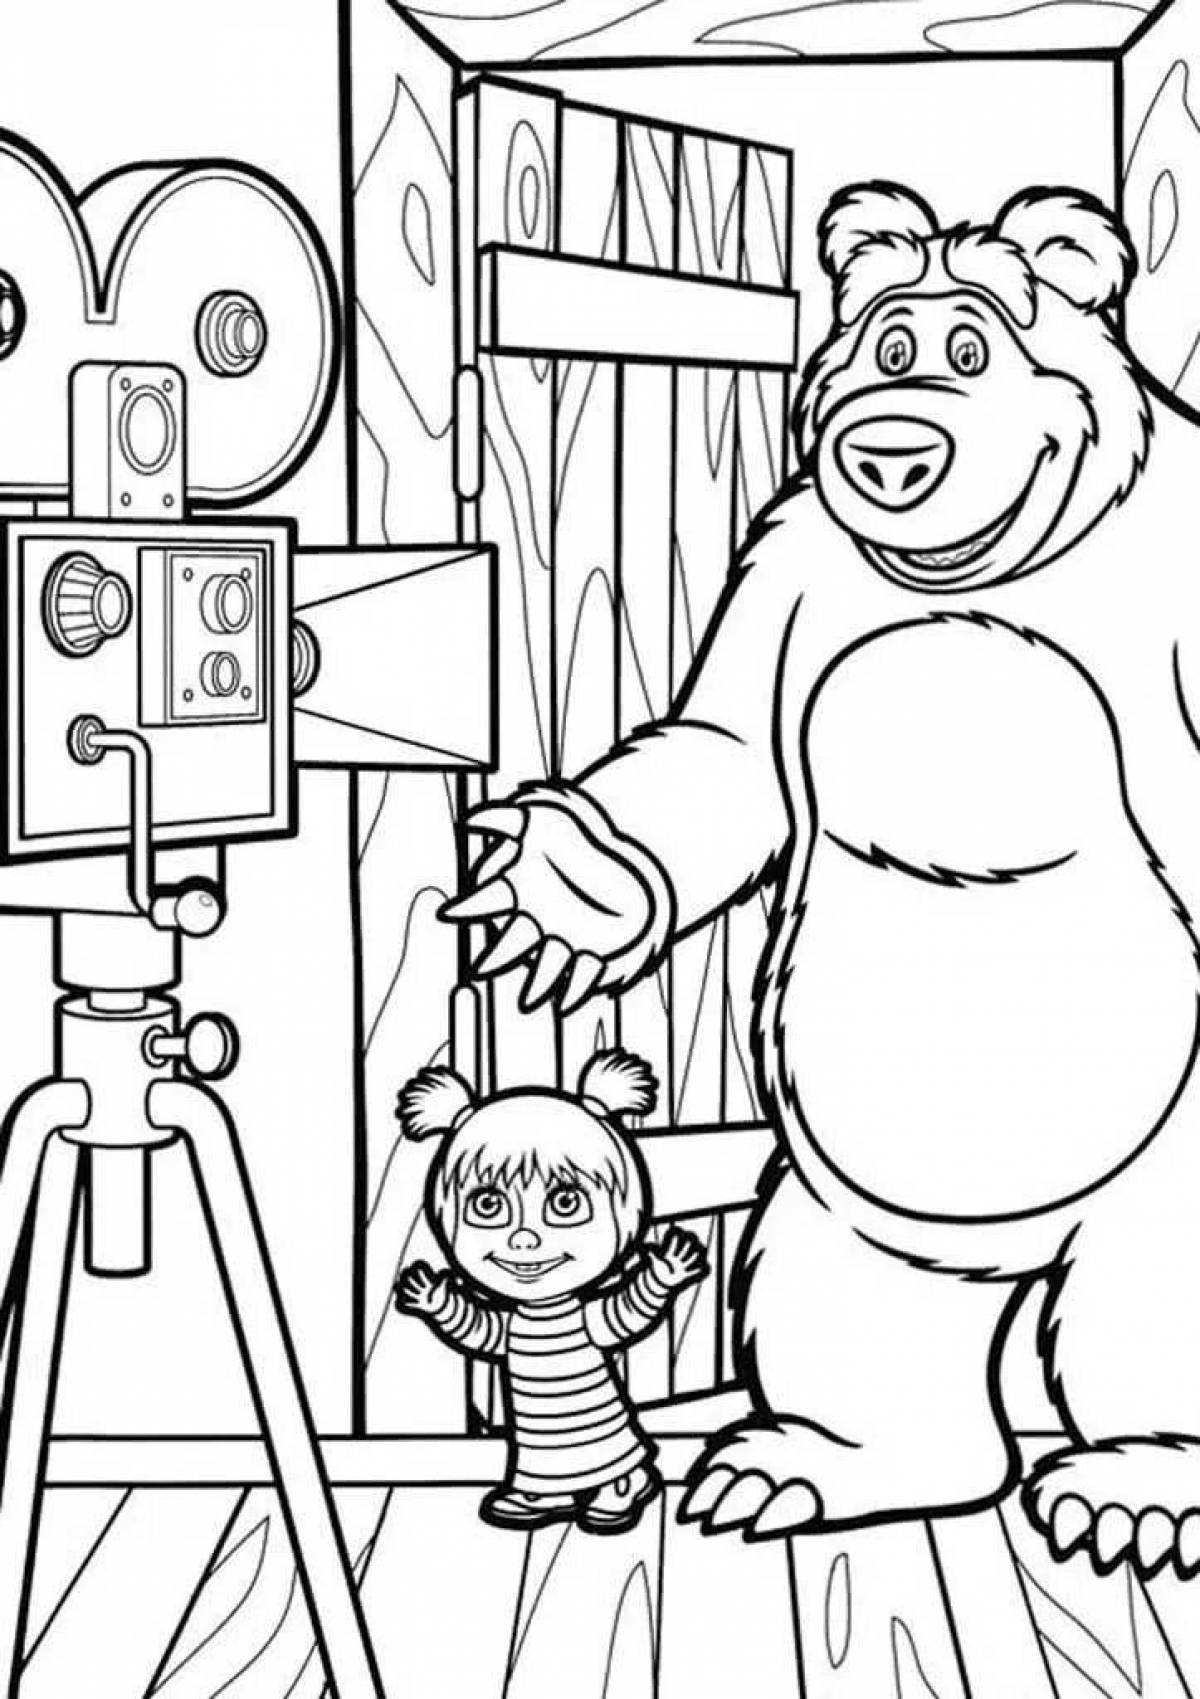 Funny drawing of masha and bear